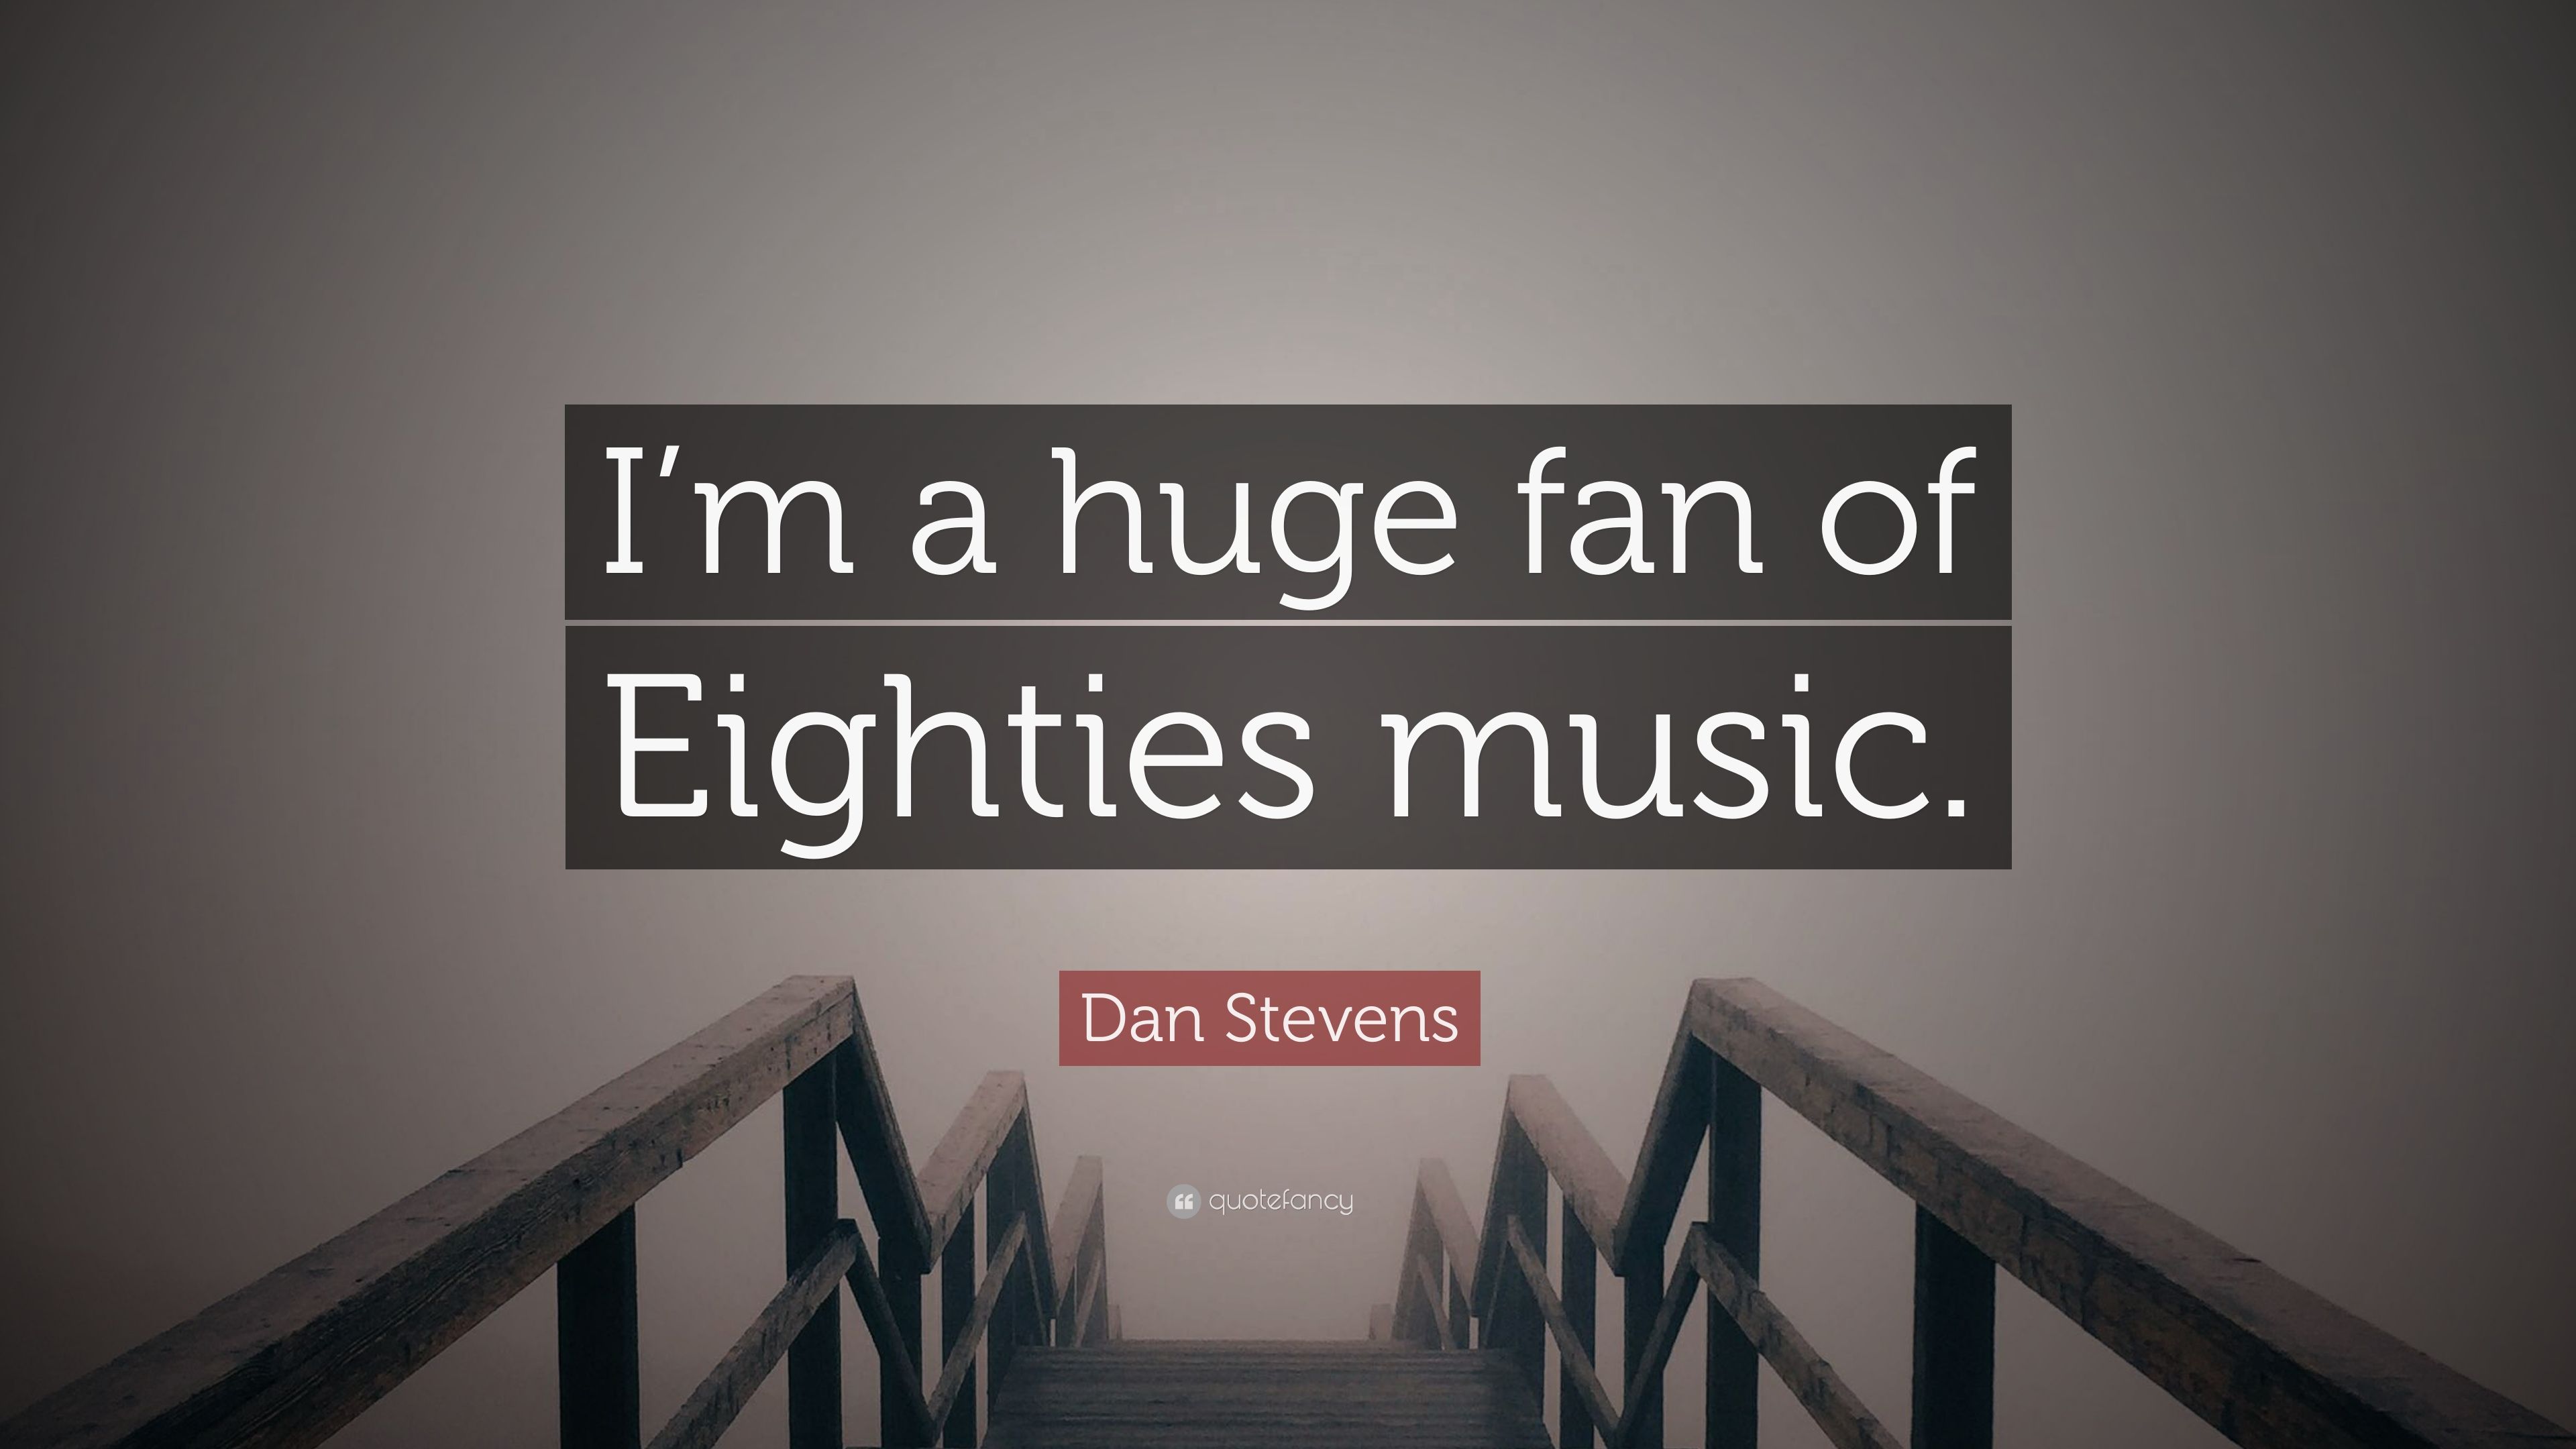 Dan Stevens Quote: “I'm a huge fan of Eighties music.” 10